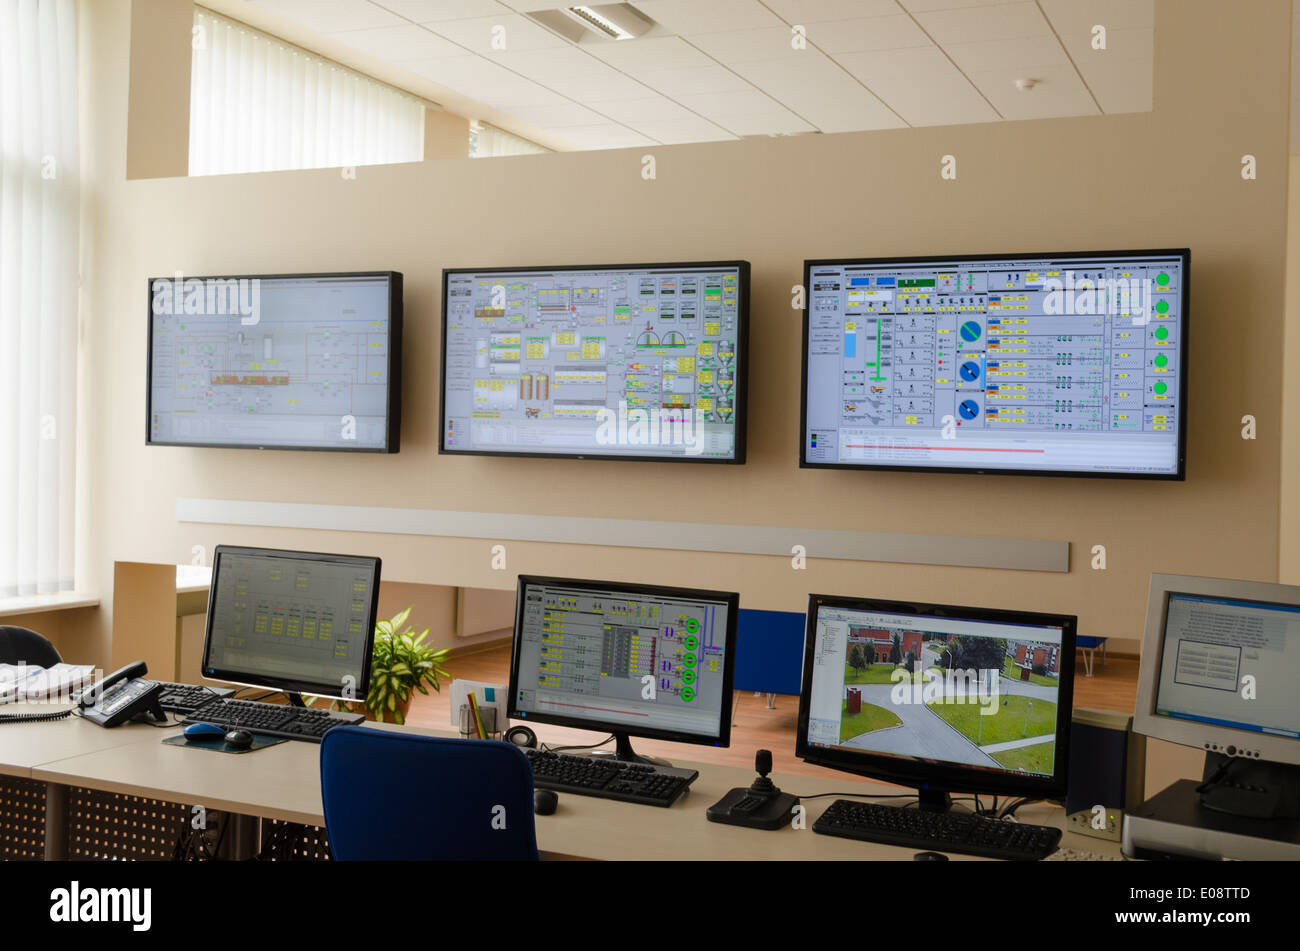 Planta de tratamiento de agua de la sala de control de fábrica con muchos monitores de ordenador y otros paneles de mantenimiento del equipo. Foto de stock